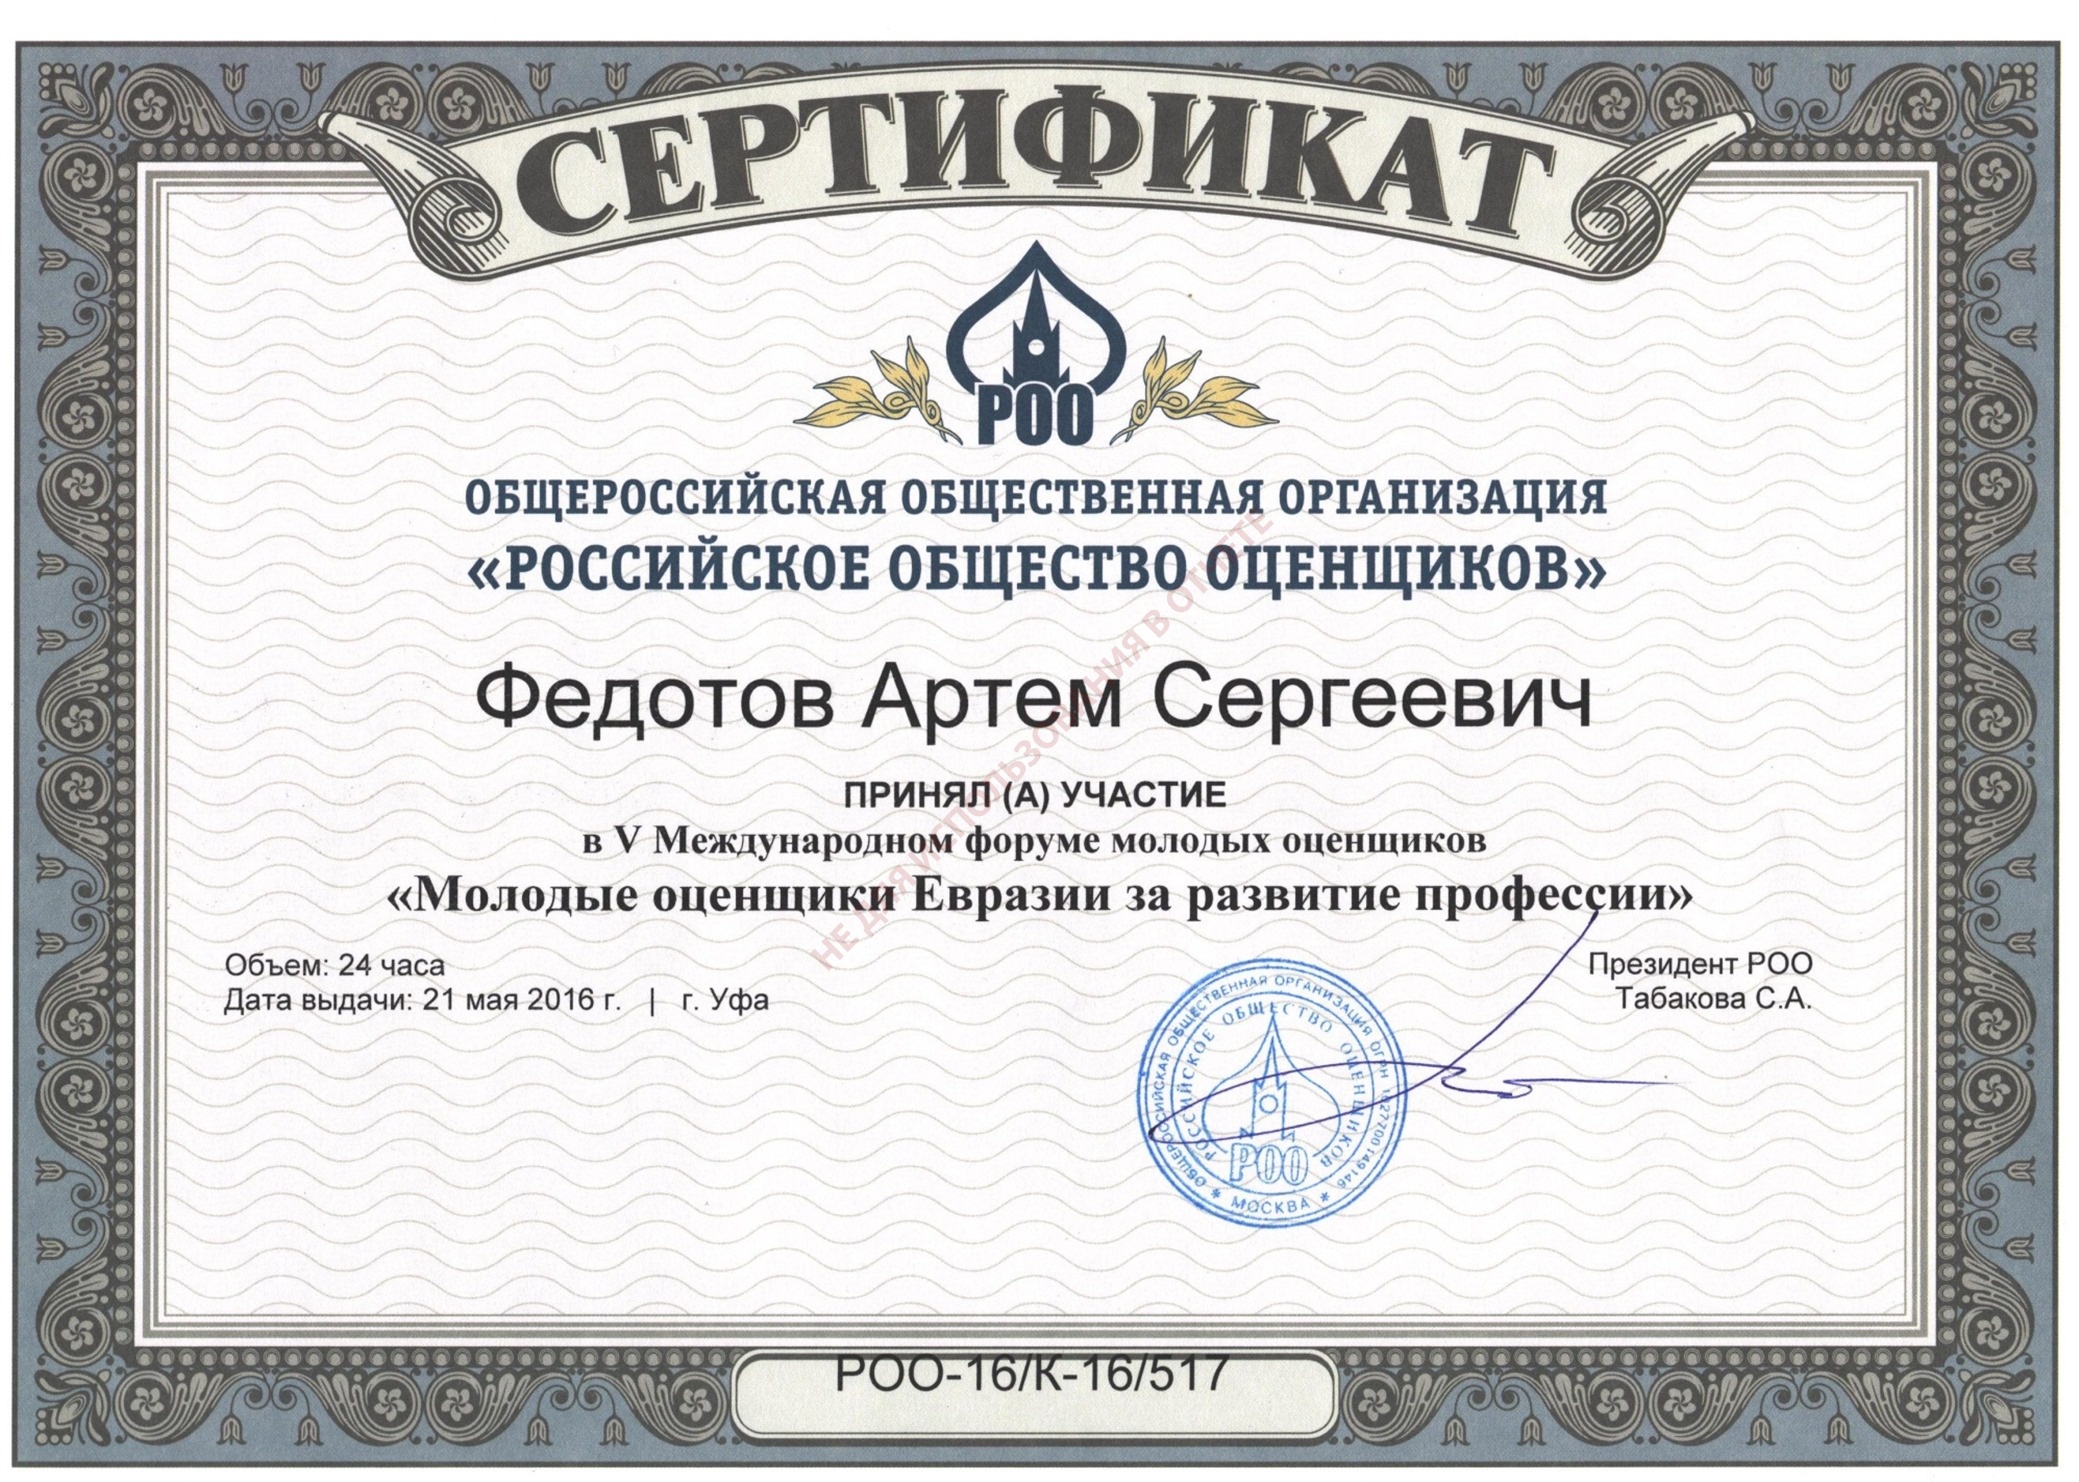 Сертификат. Молодые оценщики Евразии за развитие профессии